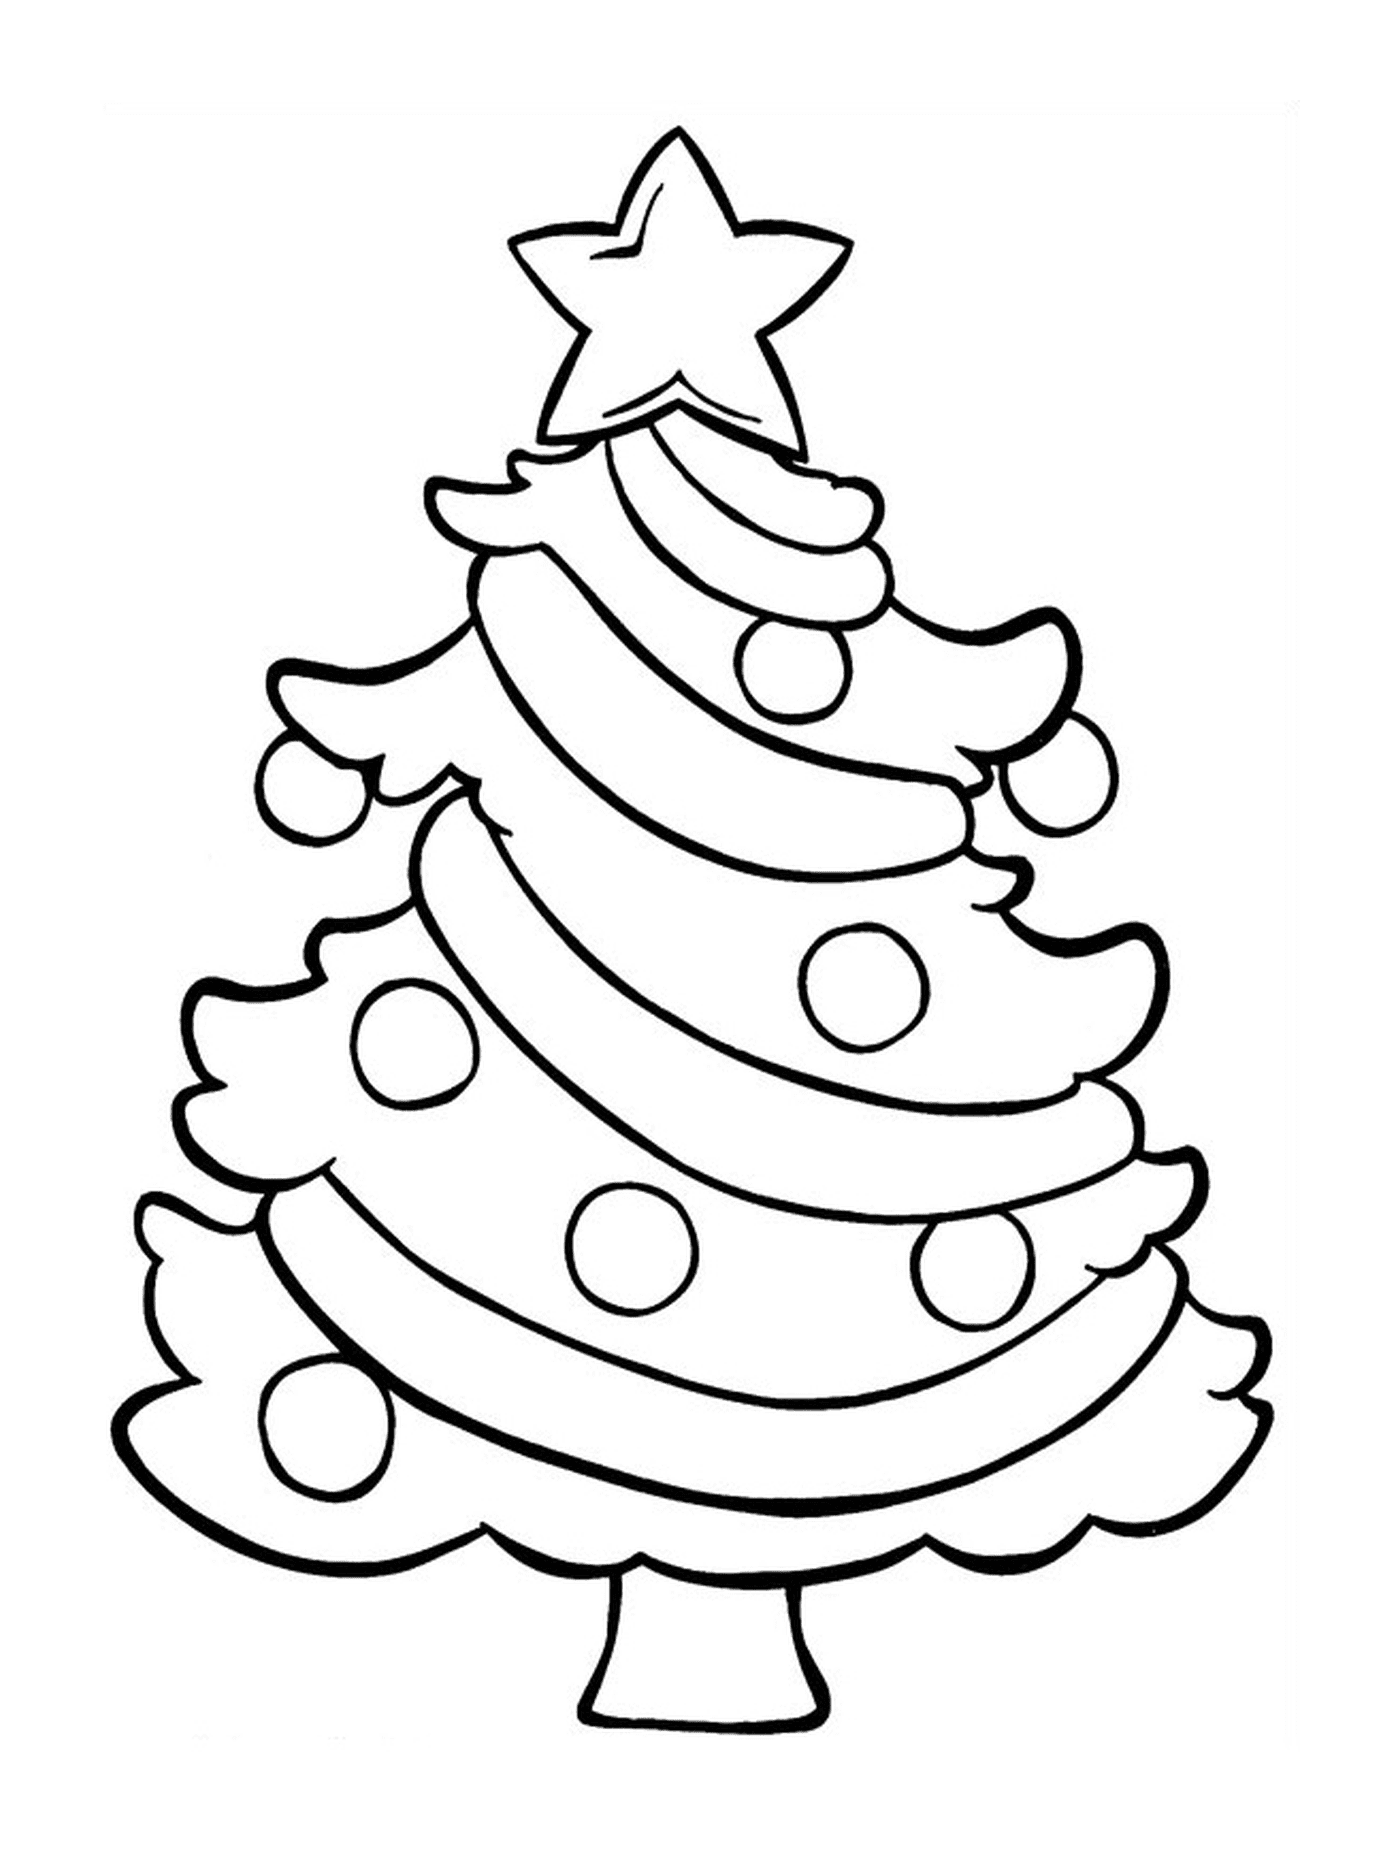  Un albero di Natale con una stella in cima 